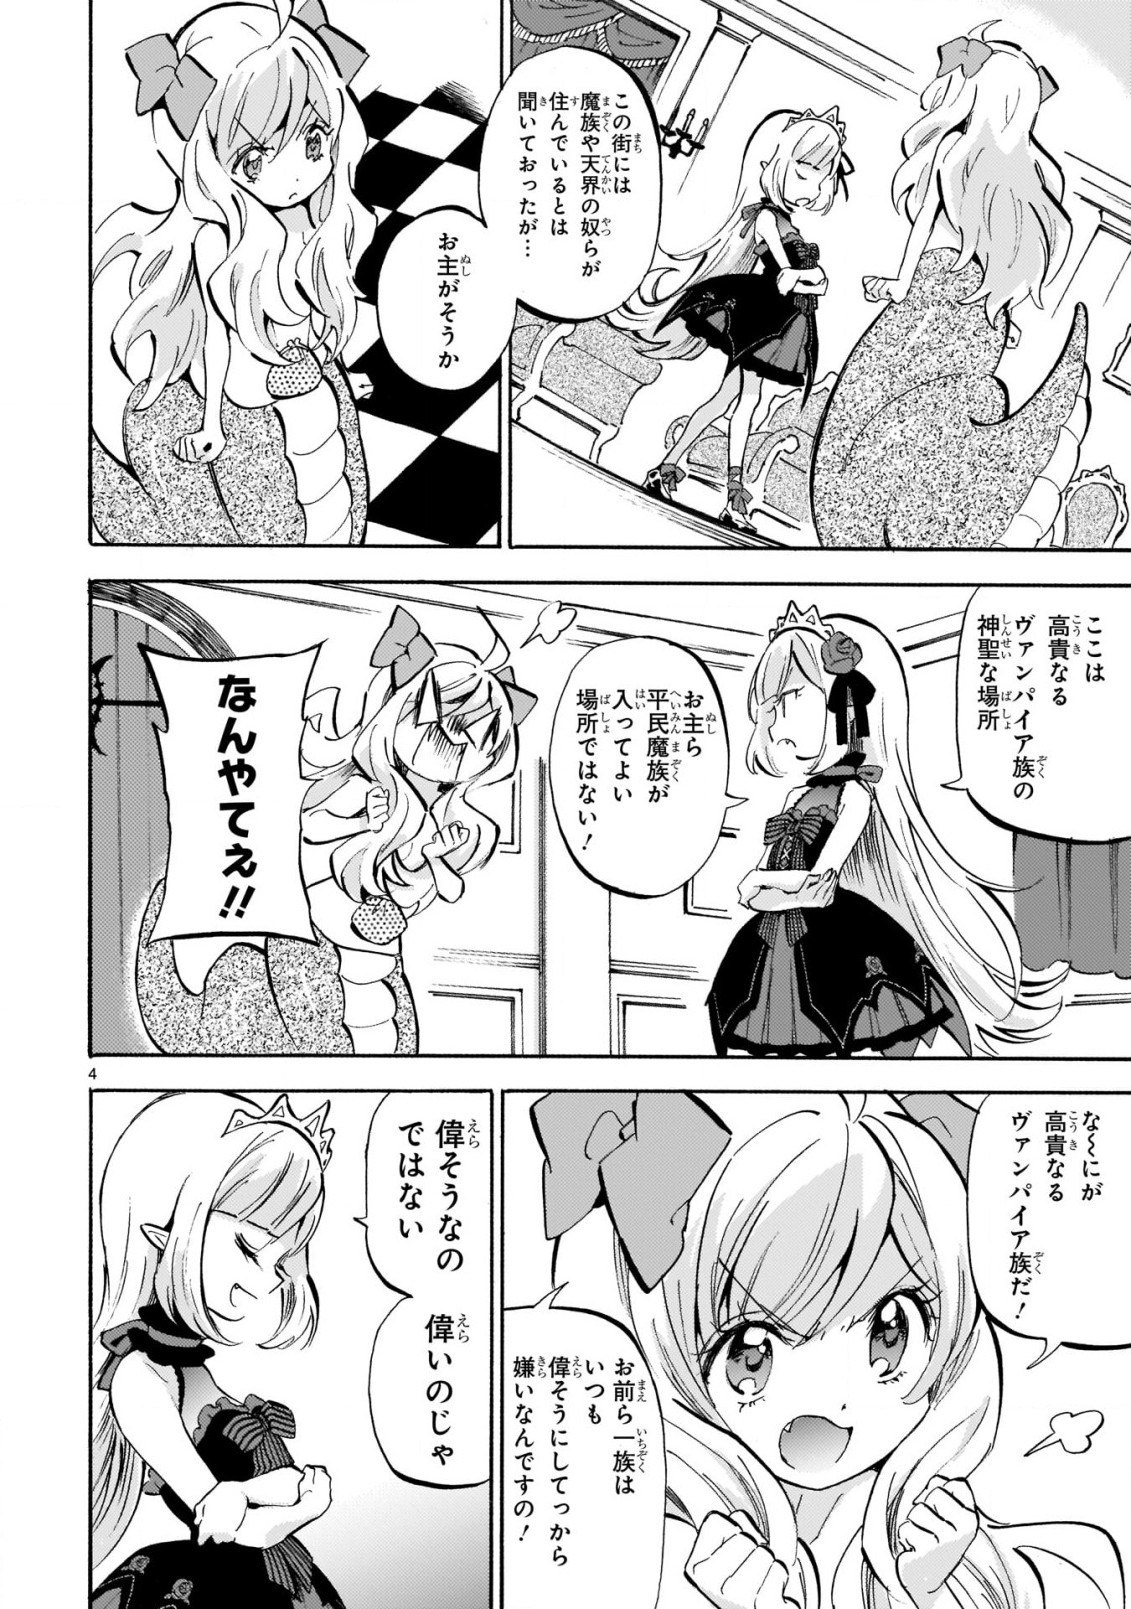 Jashin-chan Dropkick - Chapter 186 - Page 4